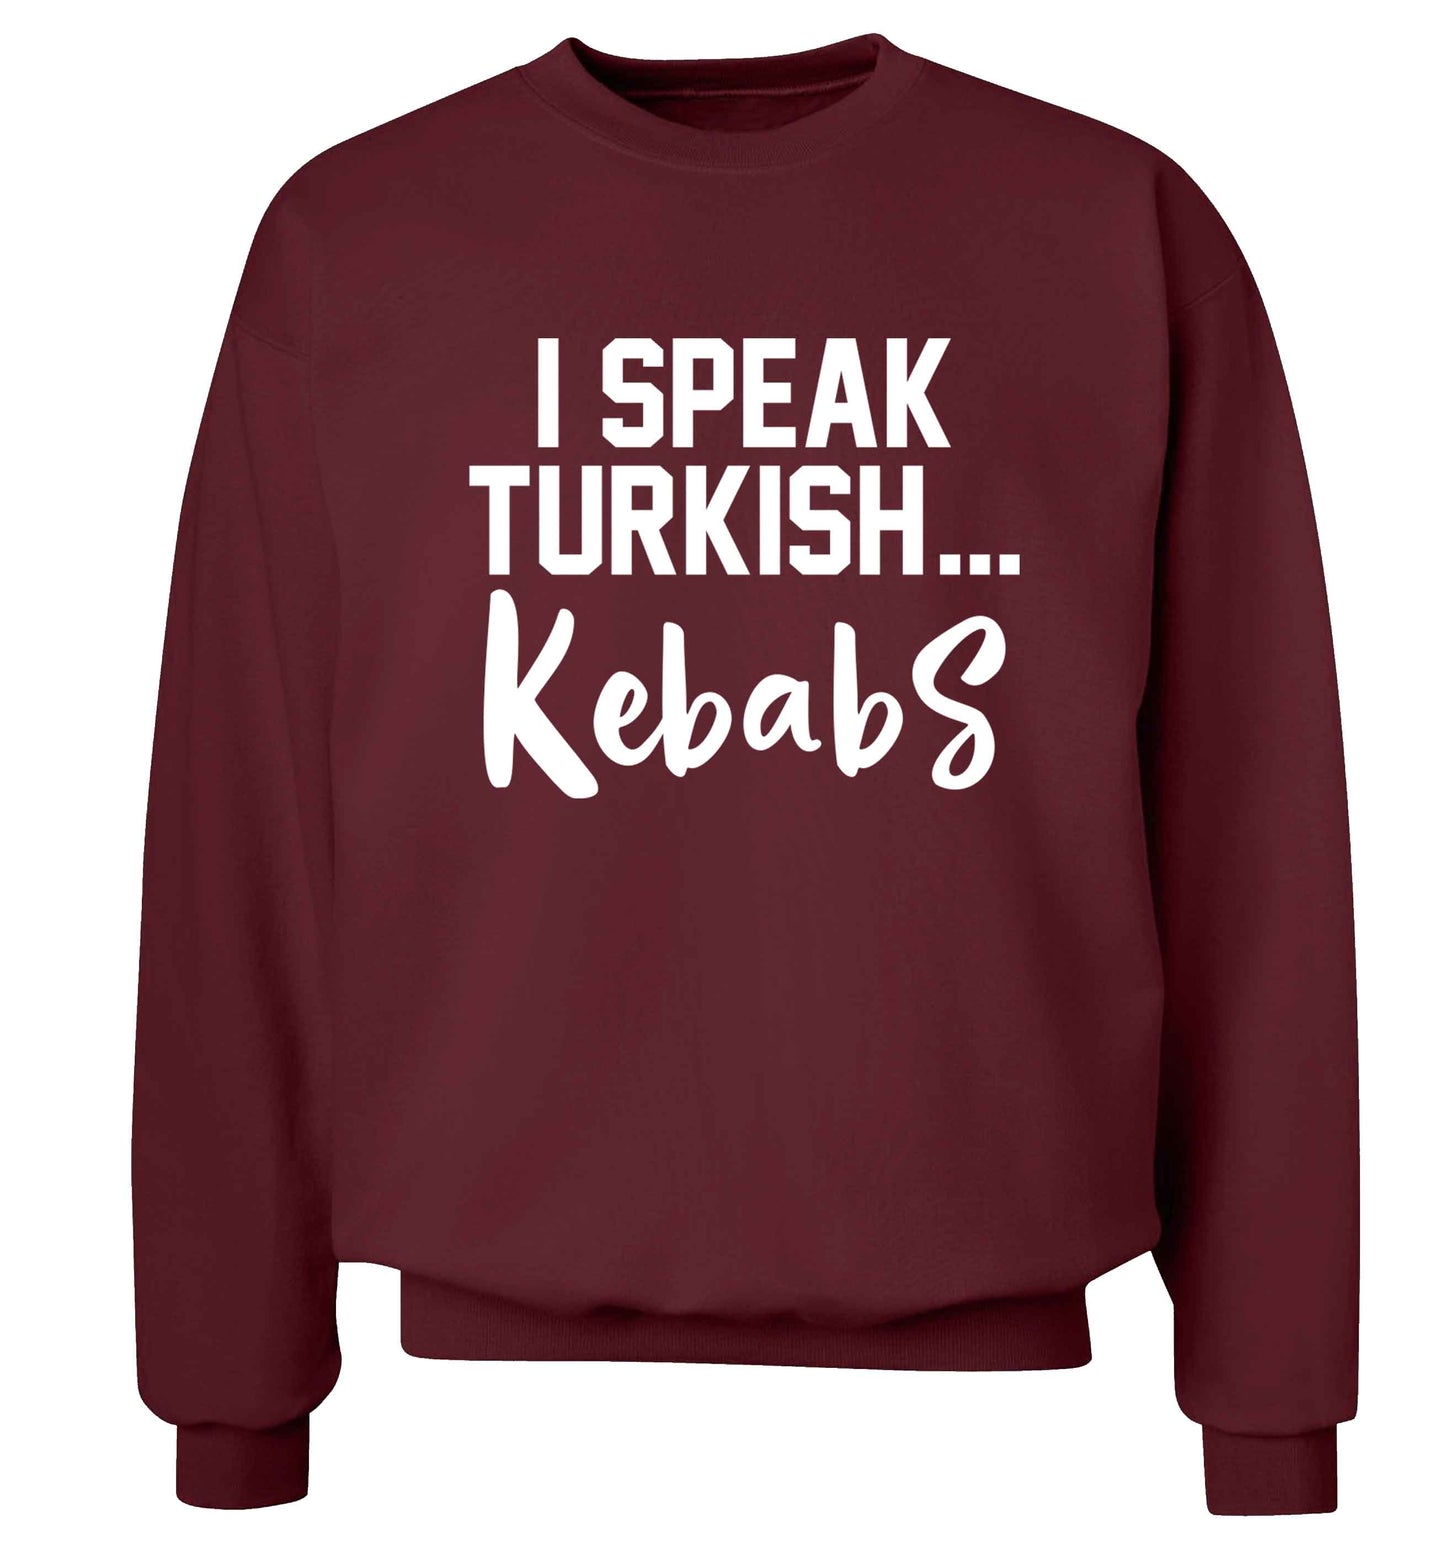 I speak Turkish...kebabs Adult's unisex maroon Sweater 2XL